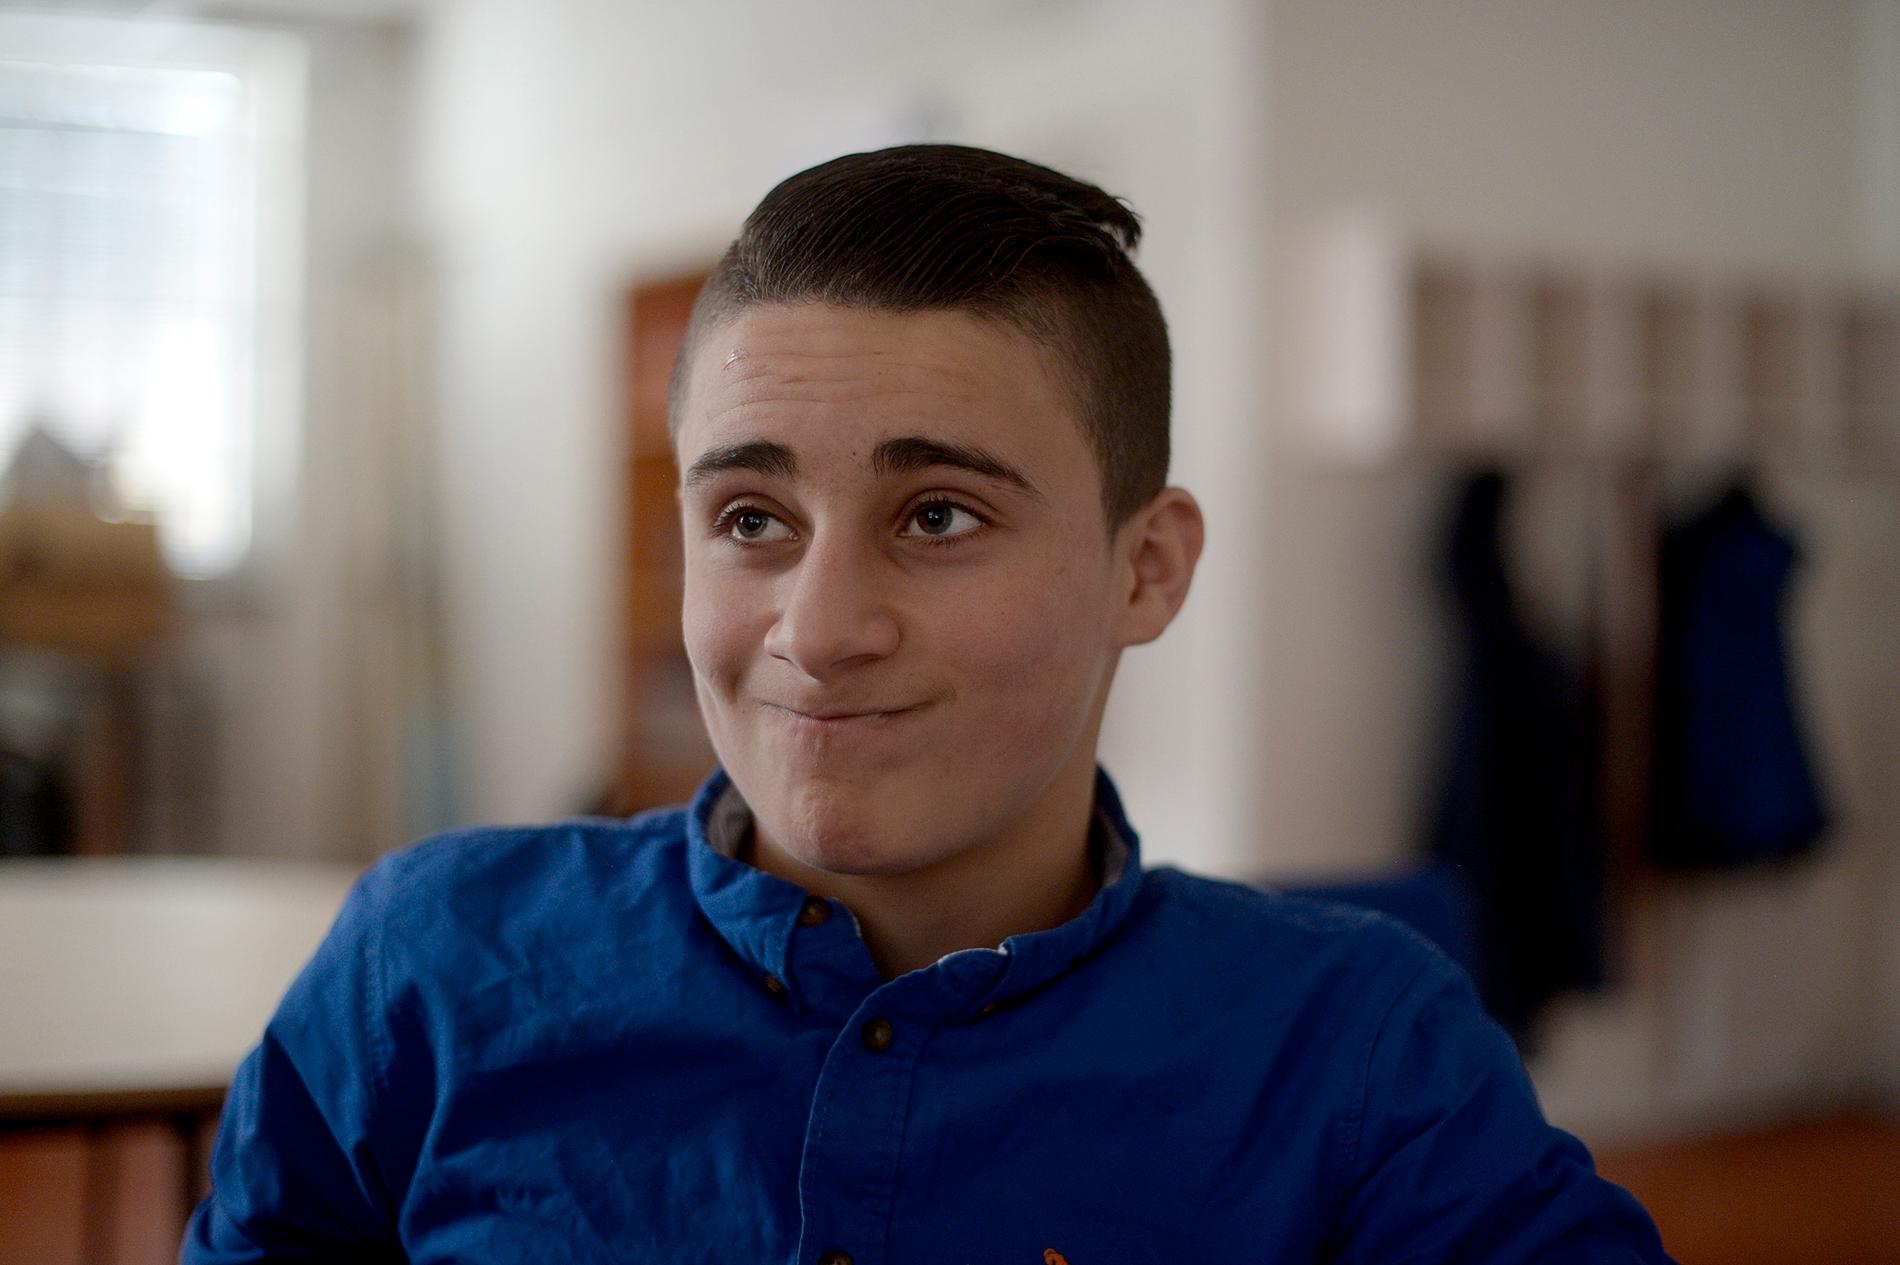 Wasem Alkhamdan, 16, kommer från Syrien. Han tycker skolan är enkel. ”Jag ska bli ingenjör, mekanik, den bästa.”